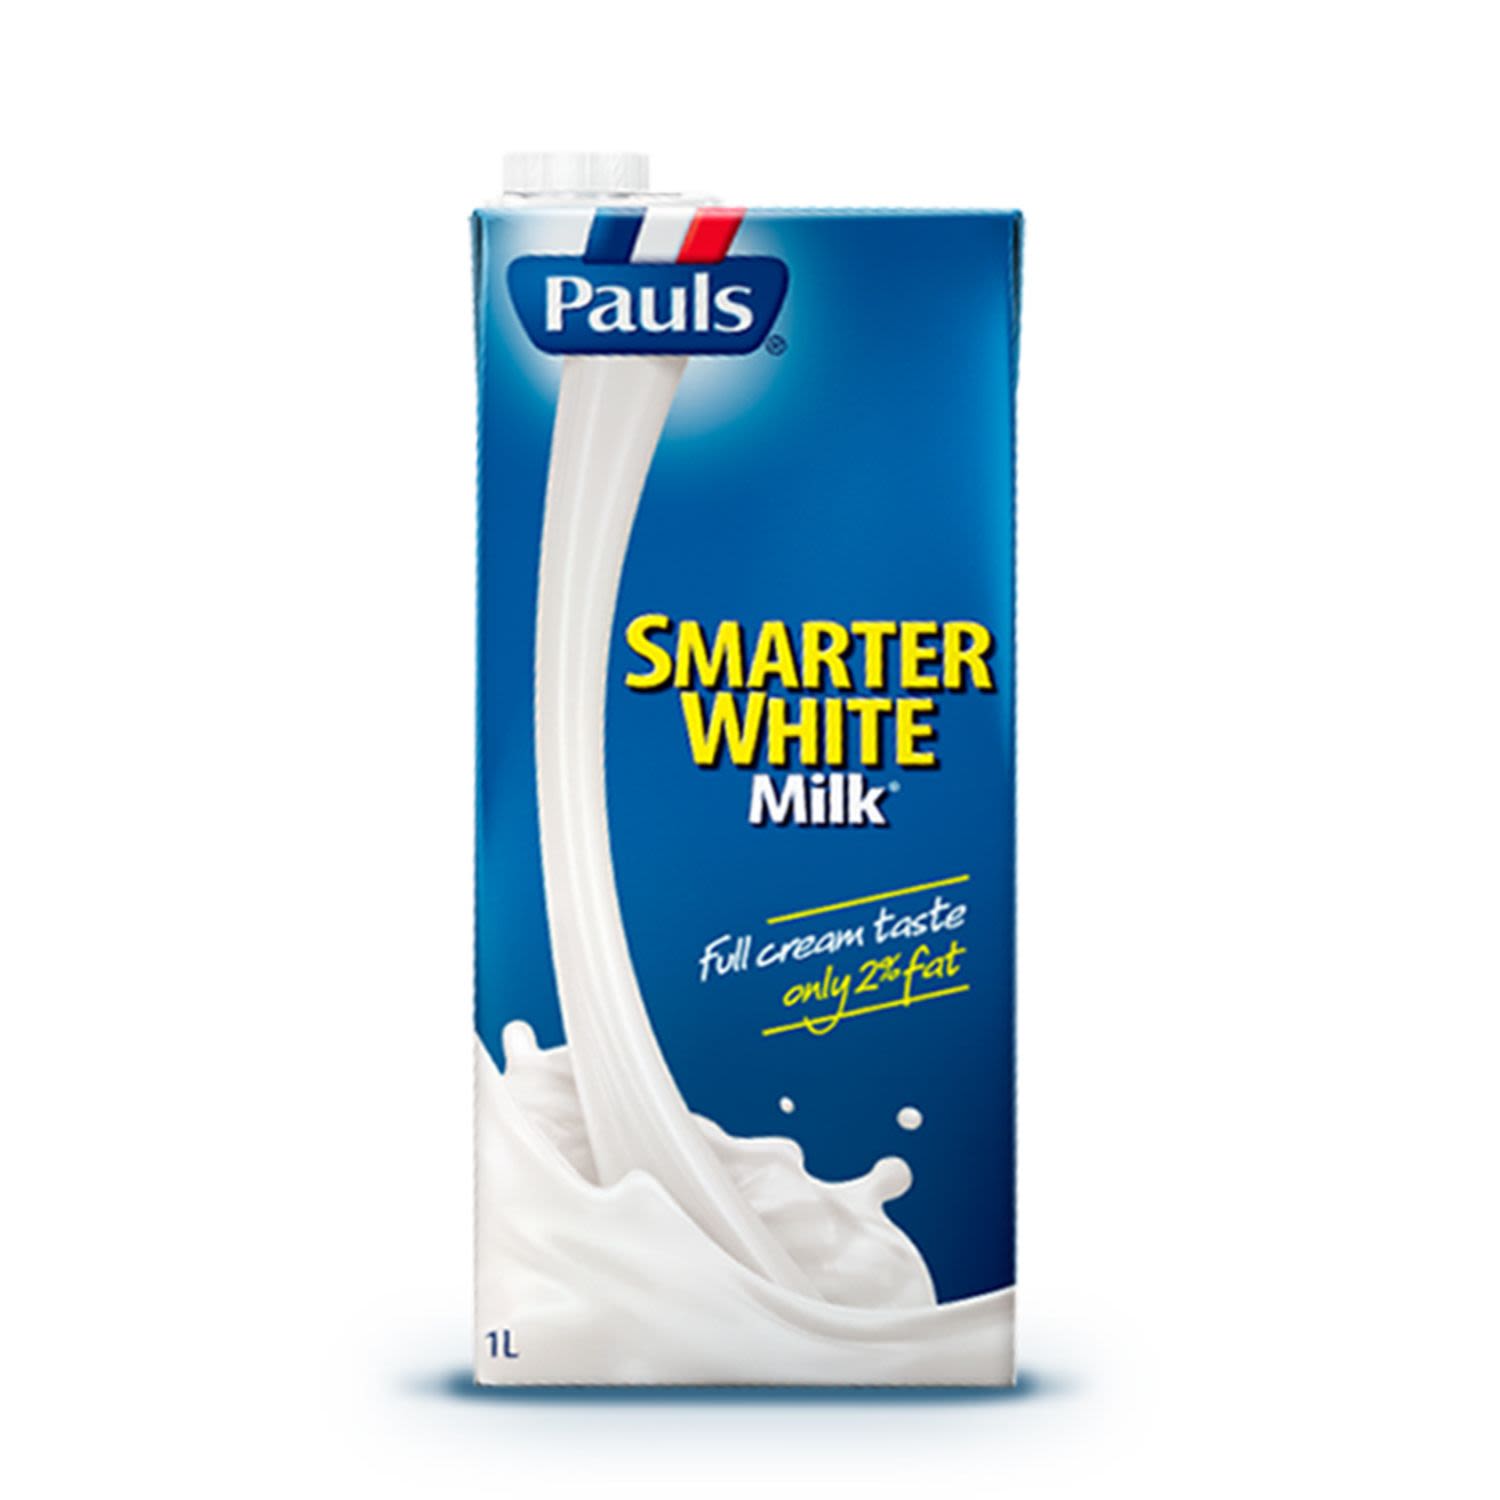 Pauls Smarter White Milk UHT, 1 Litre